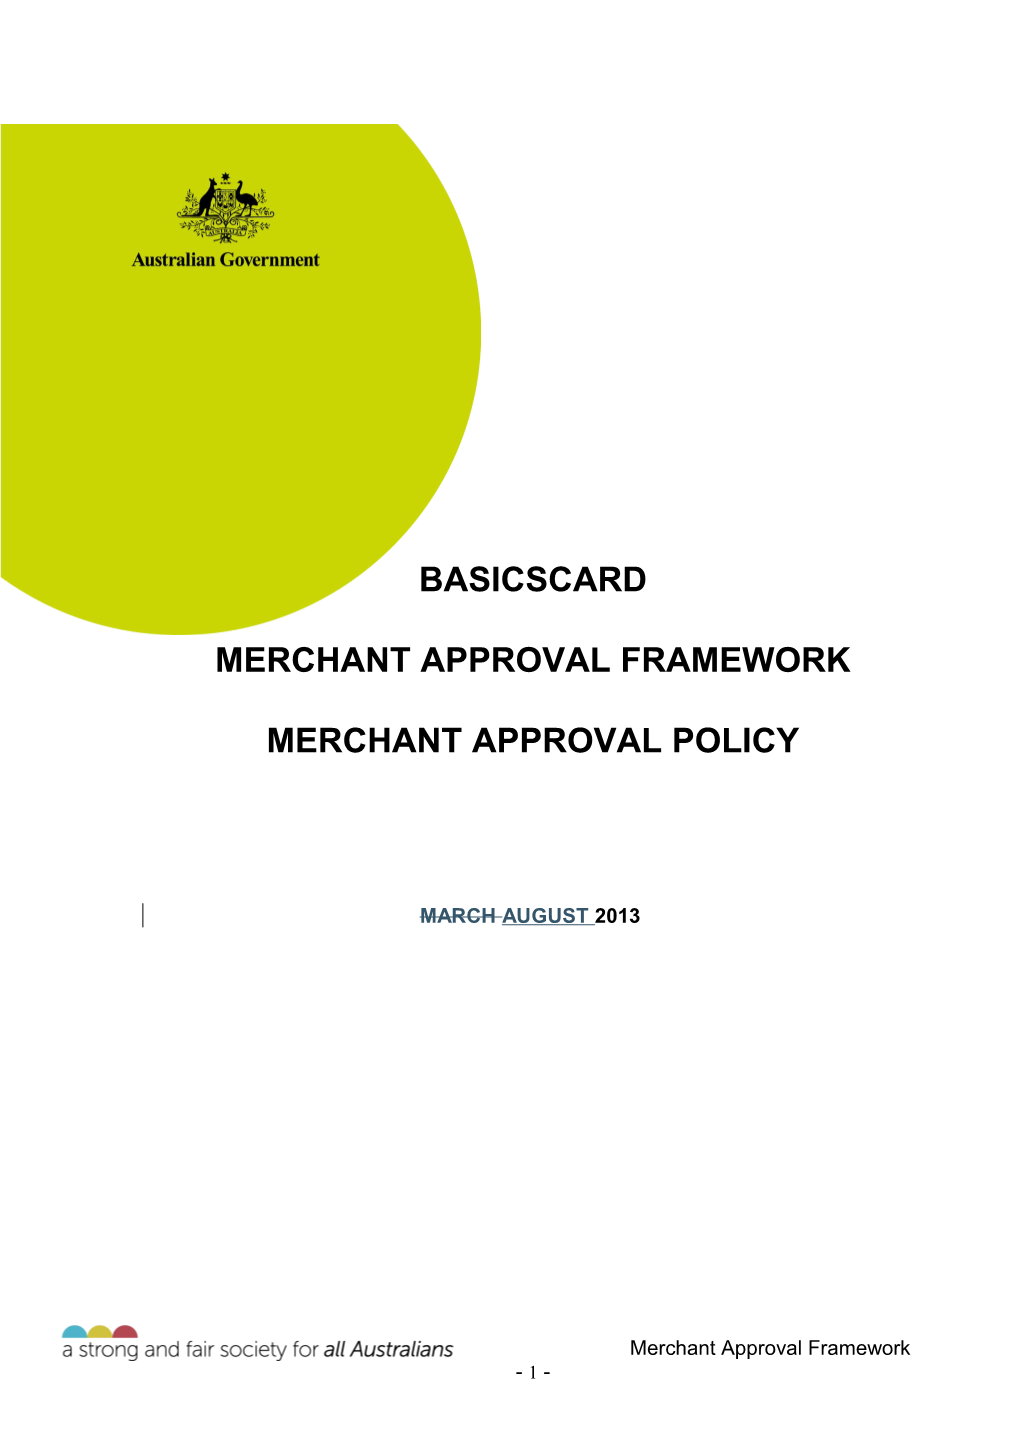 Basicscard Merchant Approval Framework